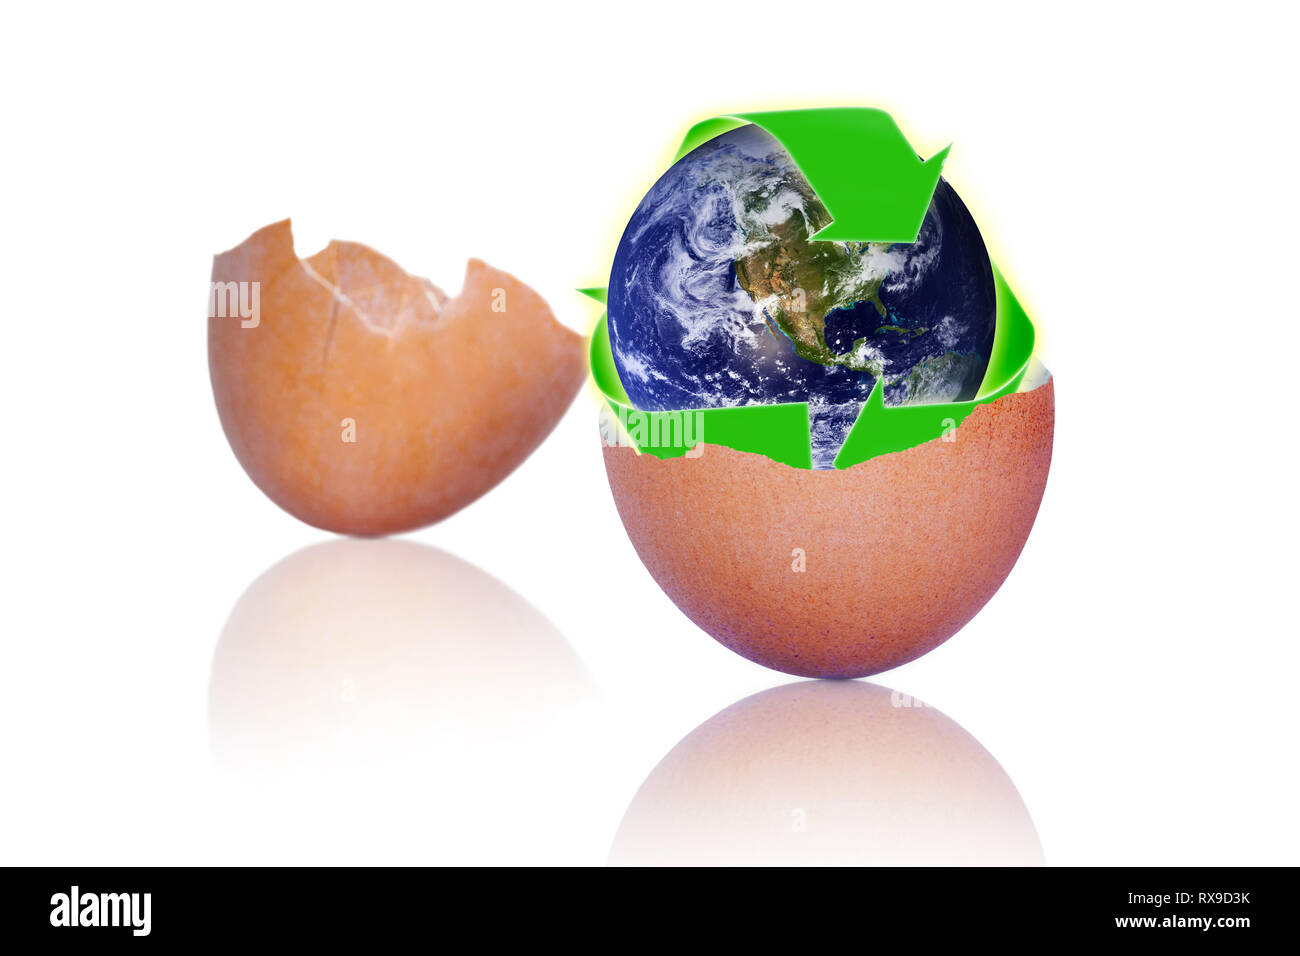 Incrinati uovo marrone che mostra il simbolo di riciclaggio oltre il pianeta terra all'interno. Evitare la produzione di rifiuti attraverso il riciclaggio di calcio-ricca dei gusci in compost o activitie giardinaggio Foto Stock